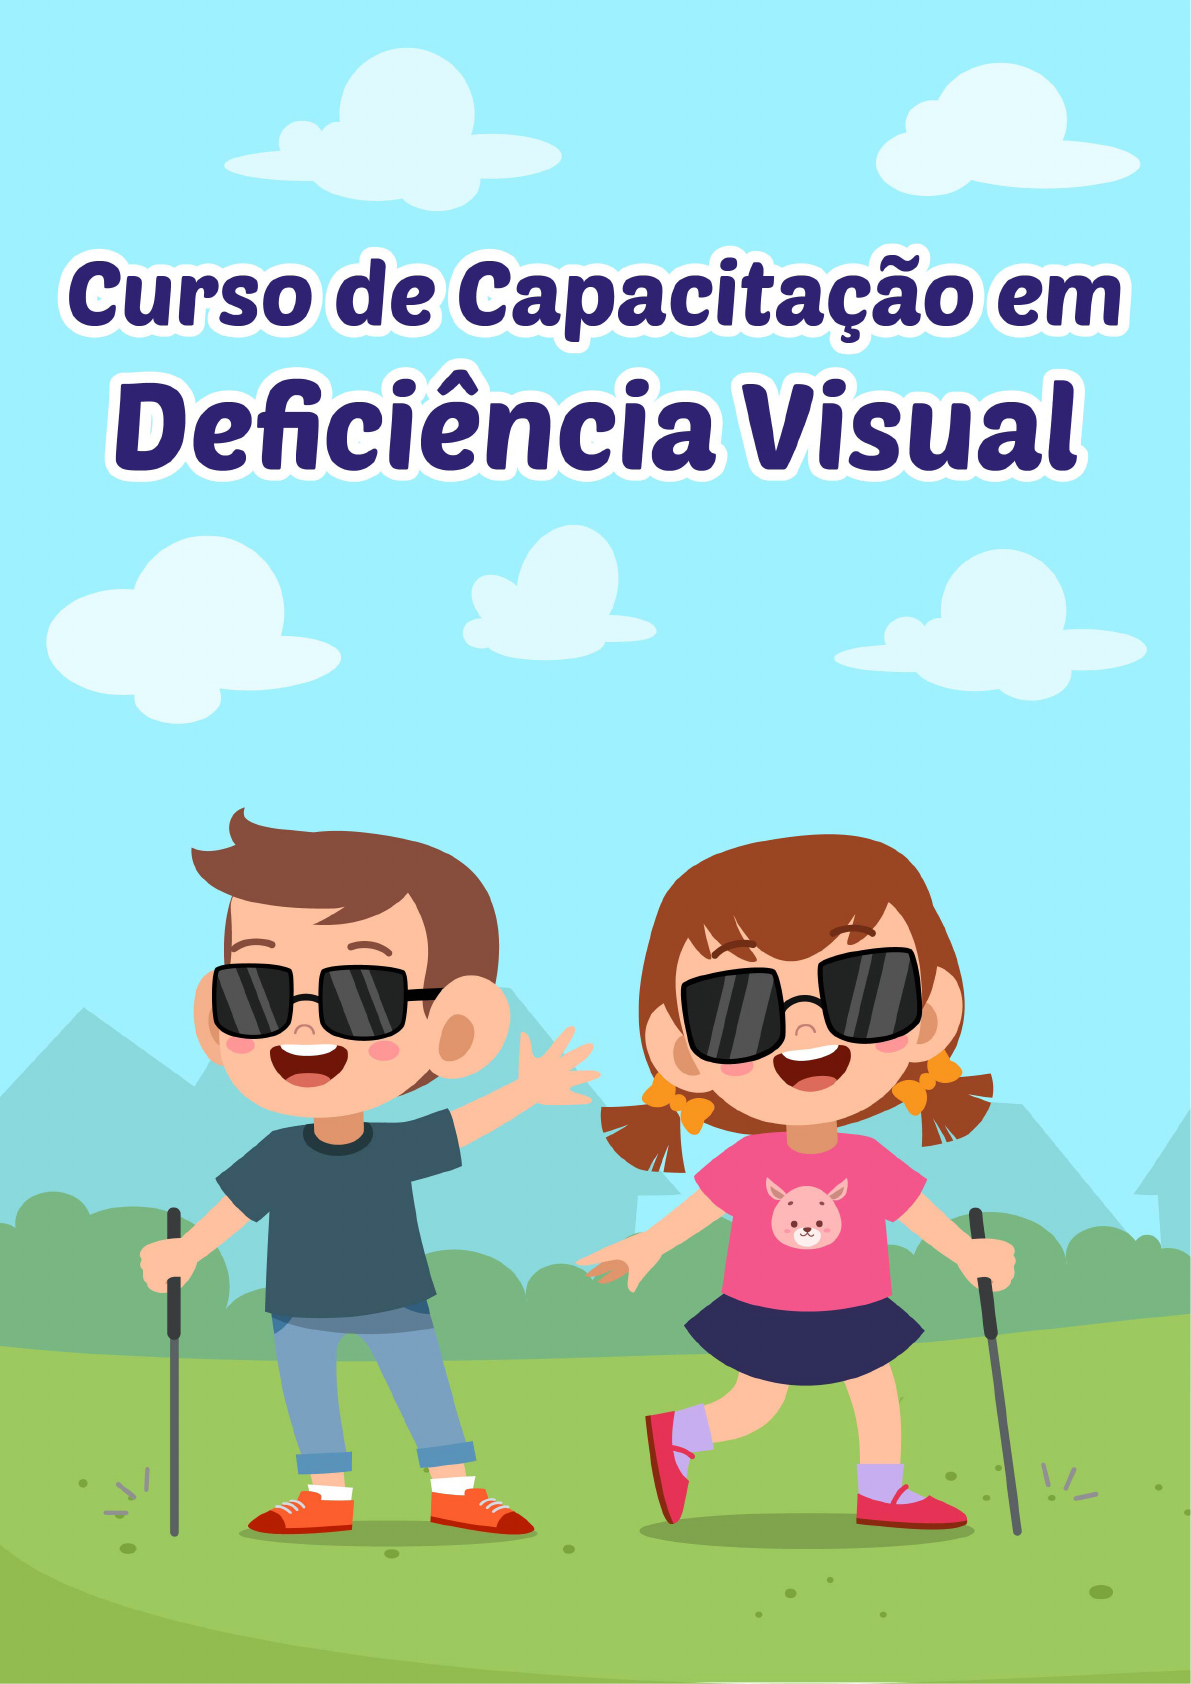 Deficientes visuais superam as dificuldades e fazem cursos de